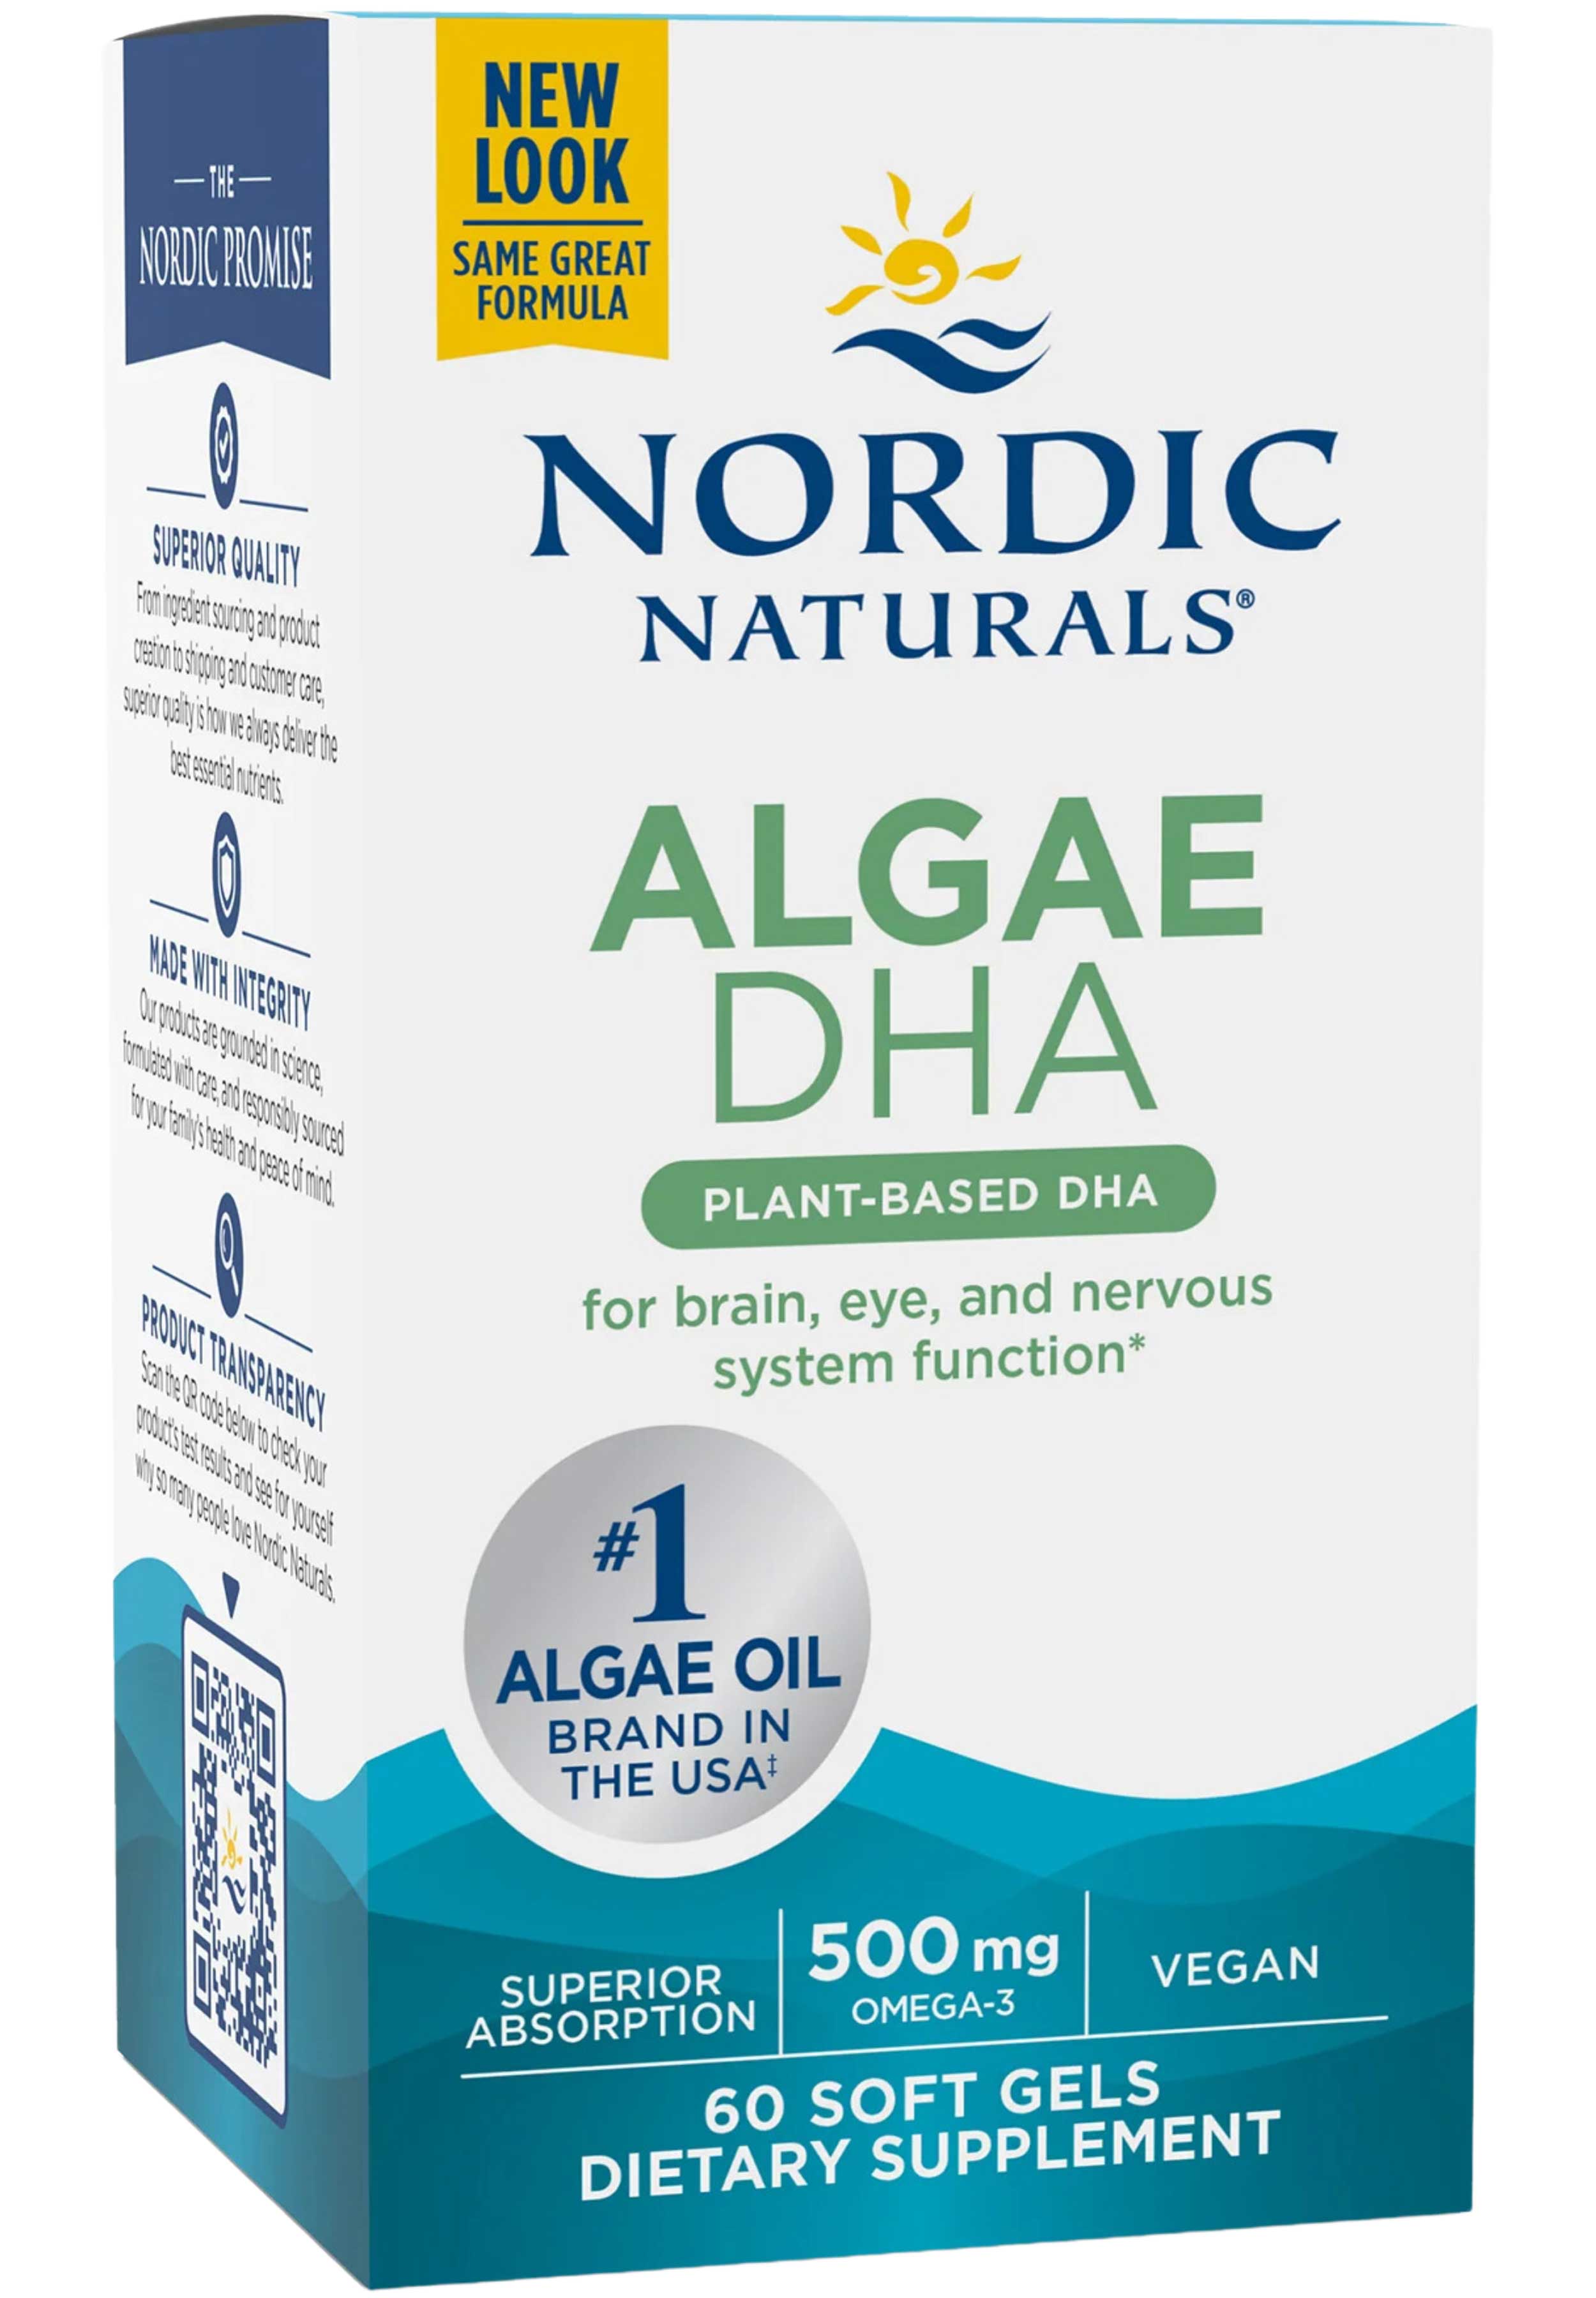 Nordic Naturals Algae DHA